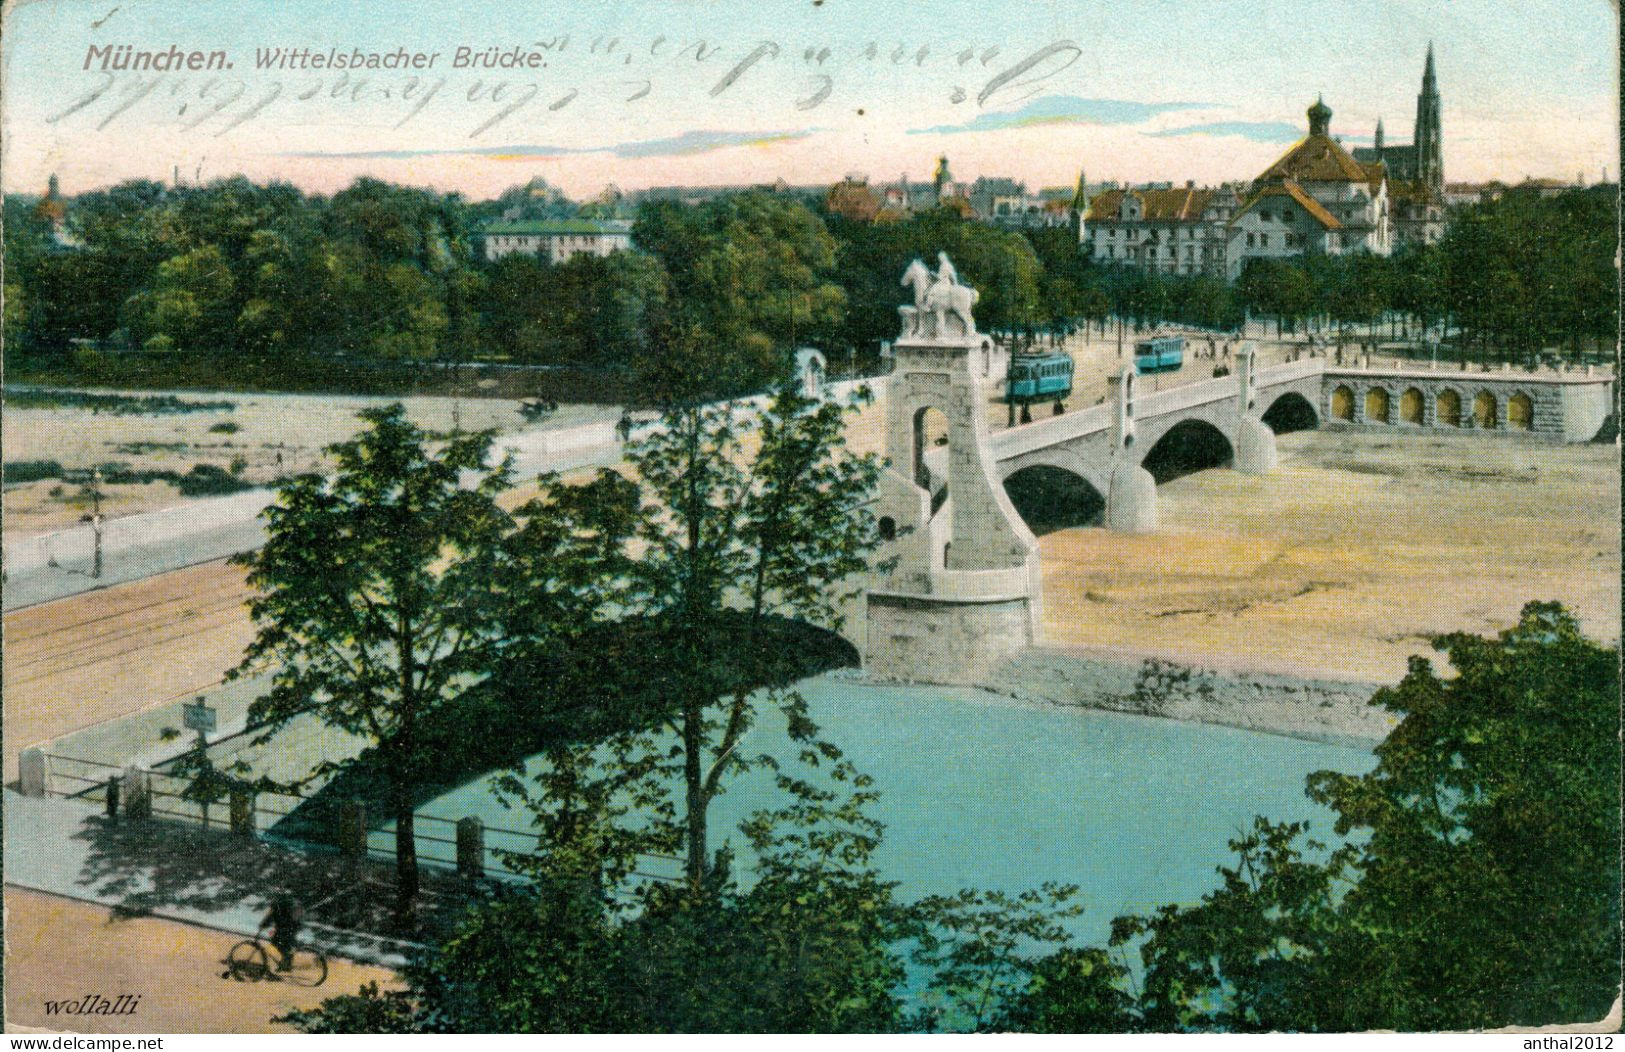 Superrar Litho München Zieher Karte Straßenbahn Wittelsbacher Brücke 13.12.1912 - Muenchen